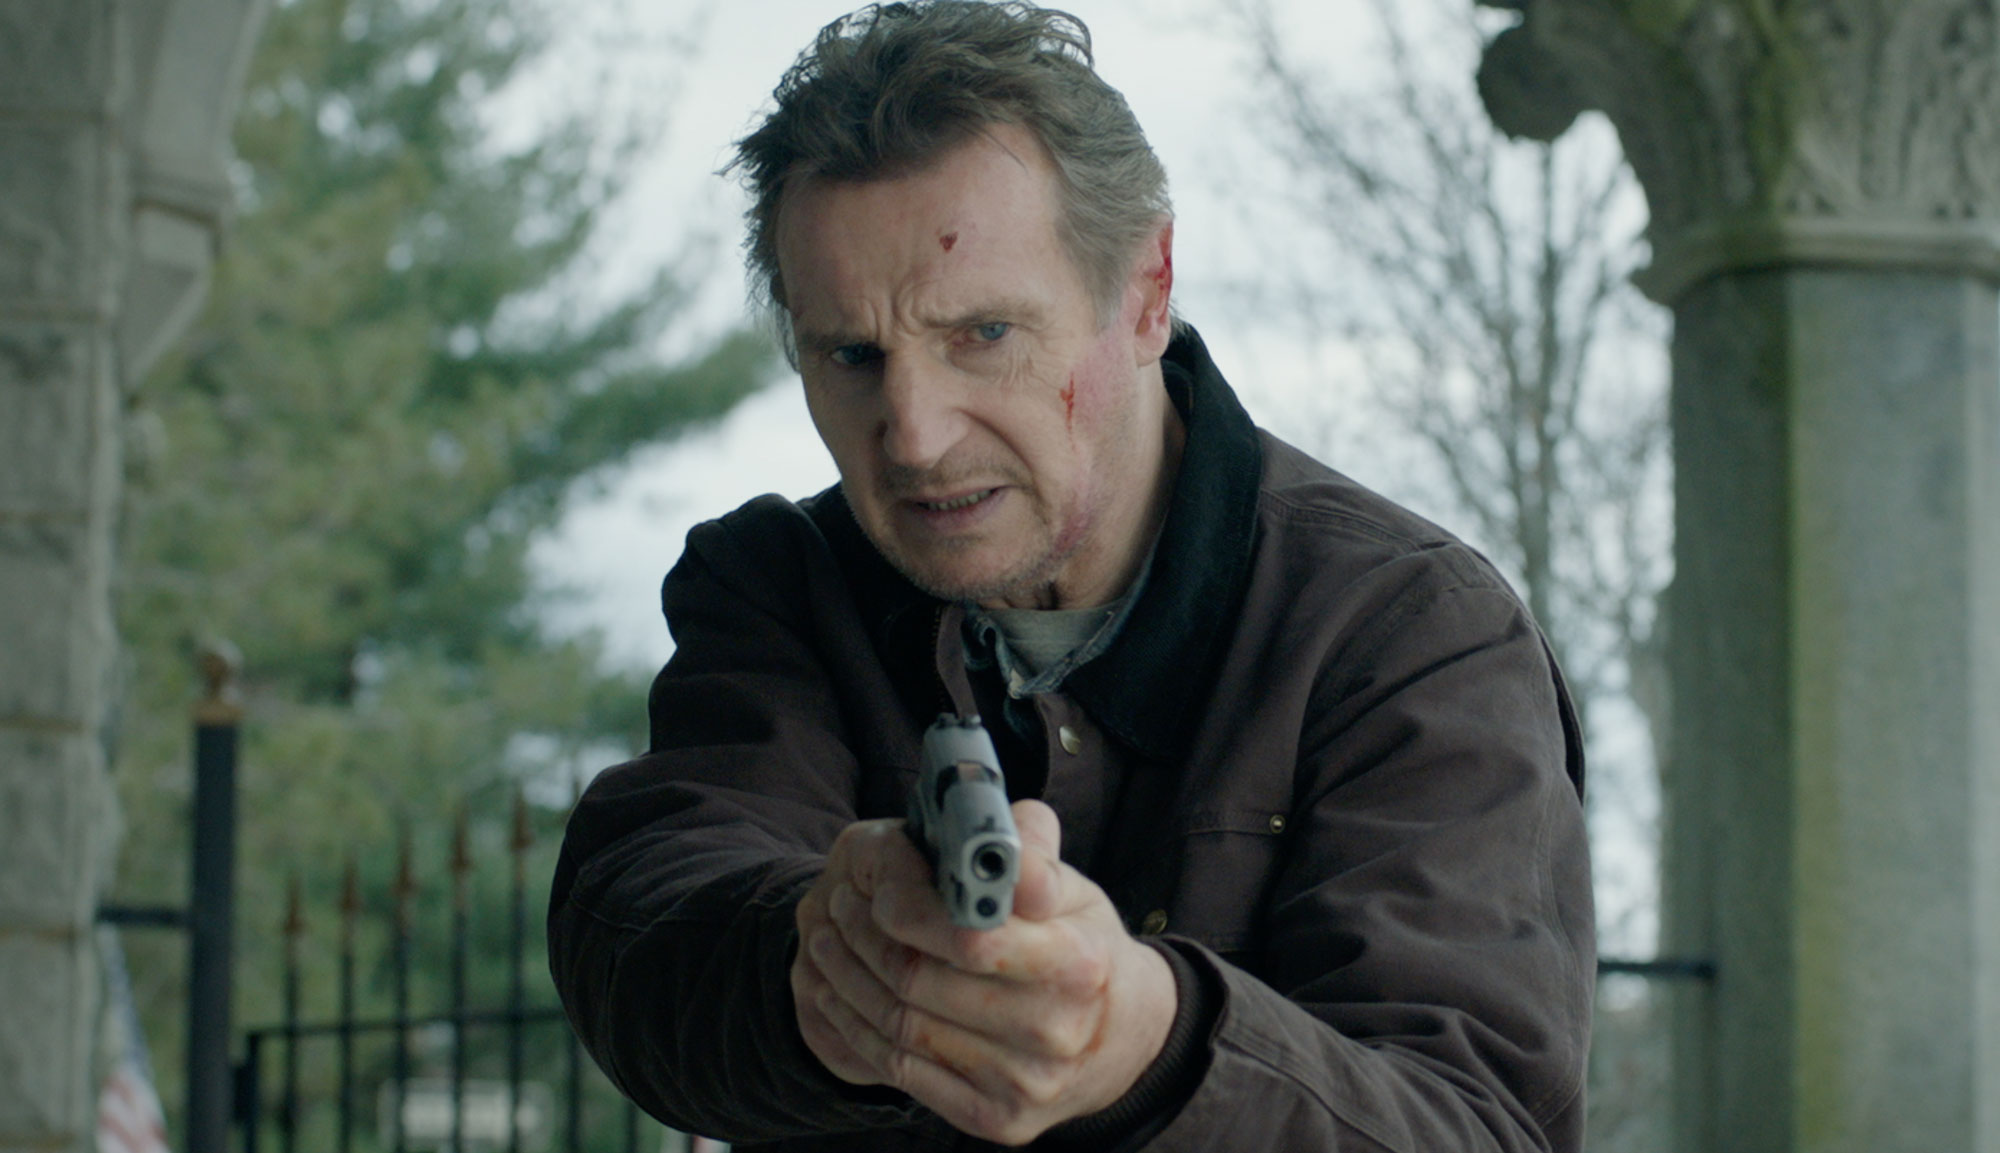 Liam Neeson in "Honest Thief"